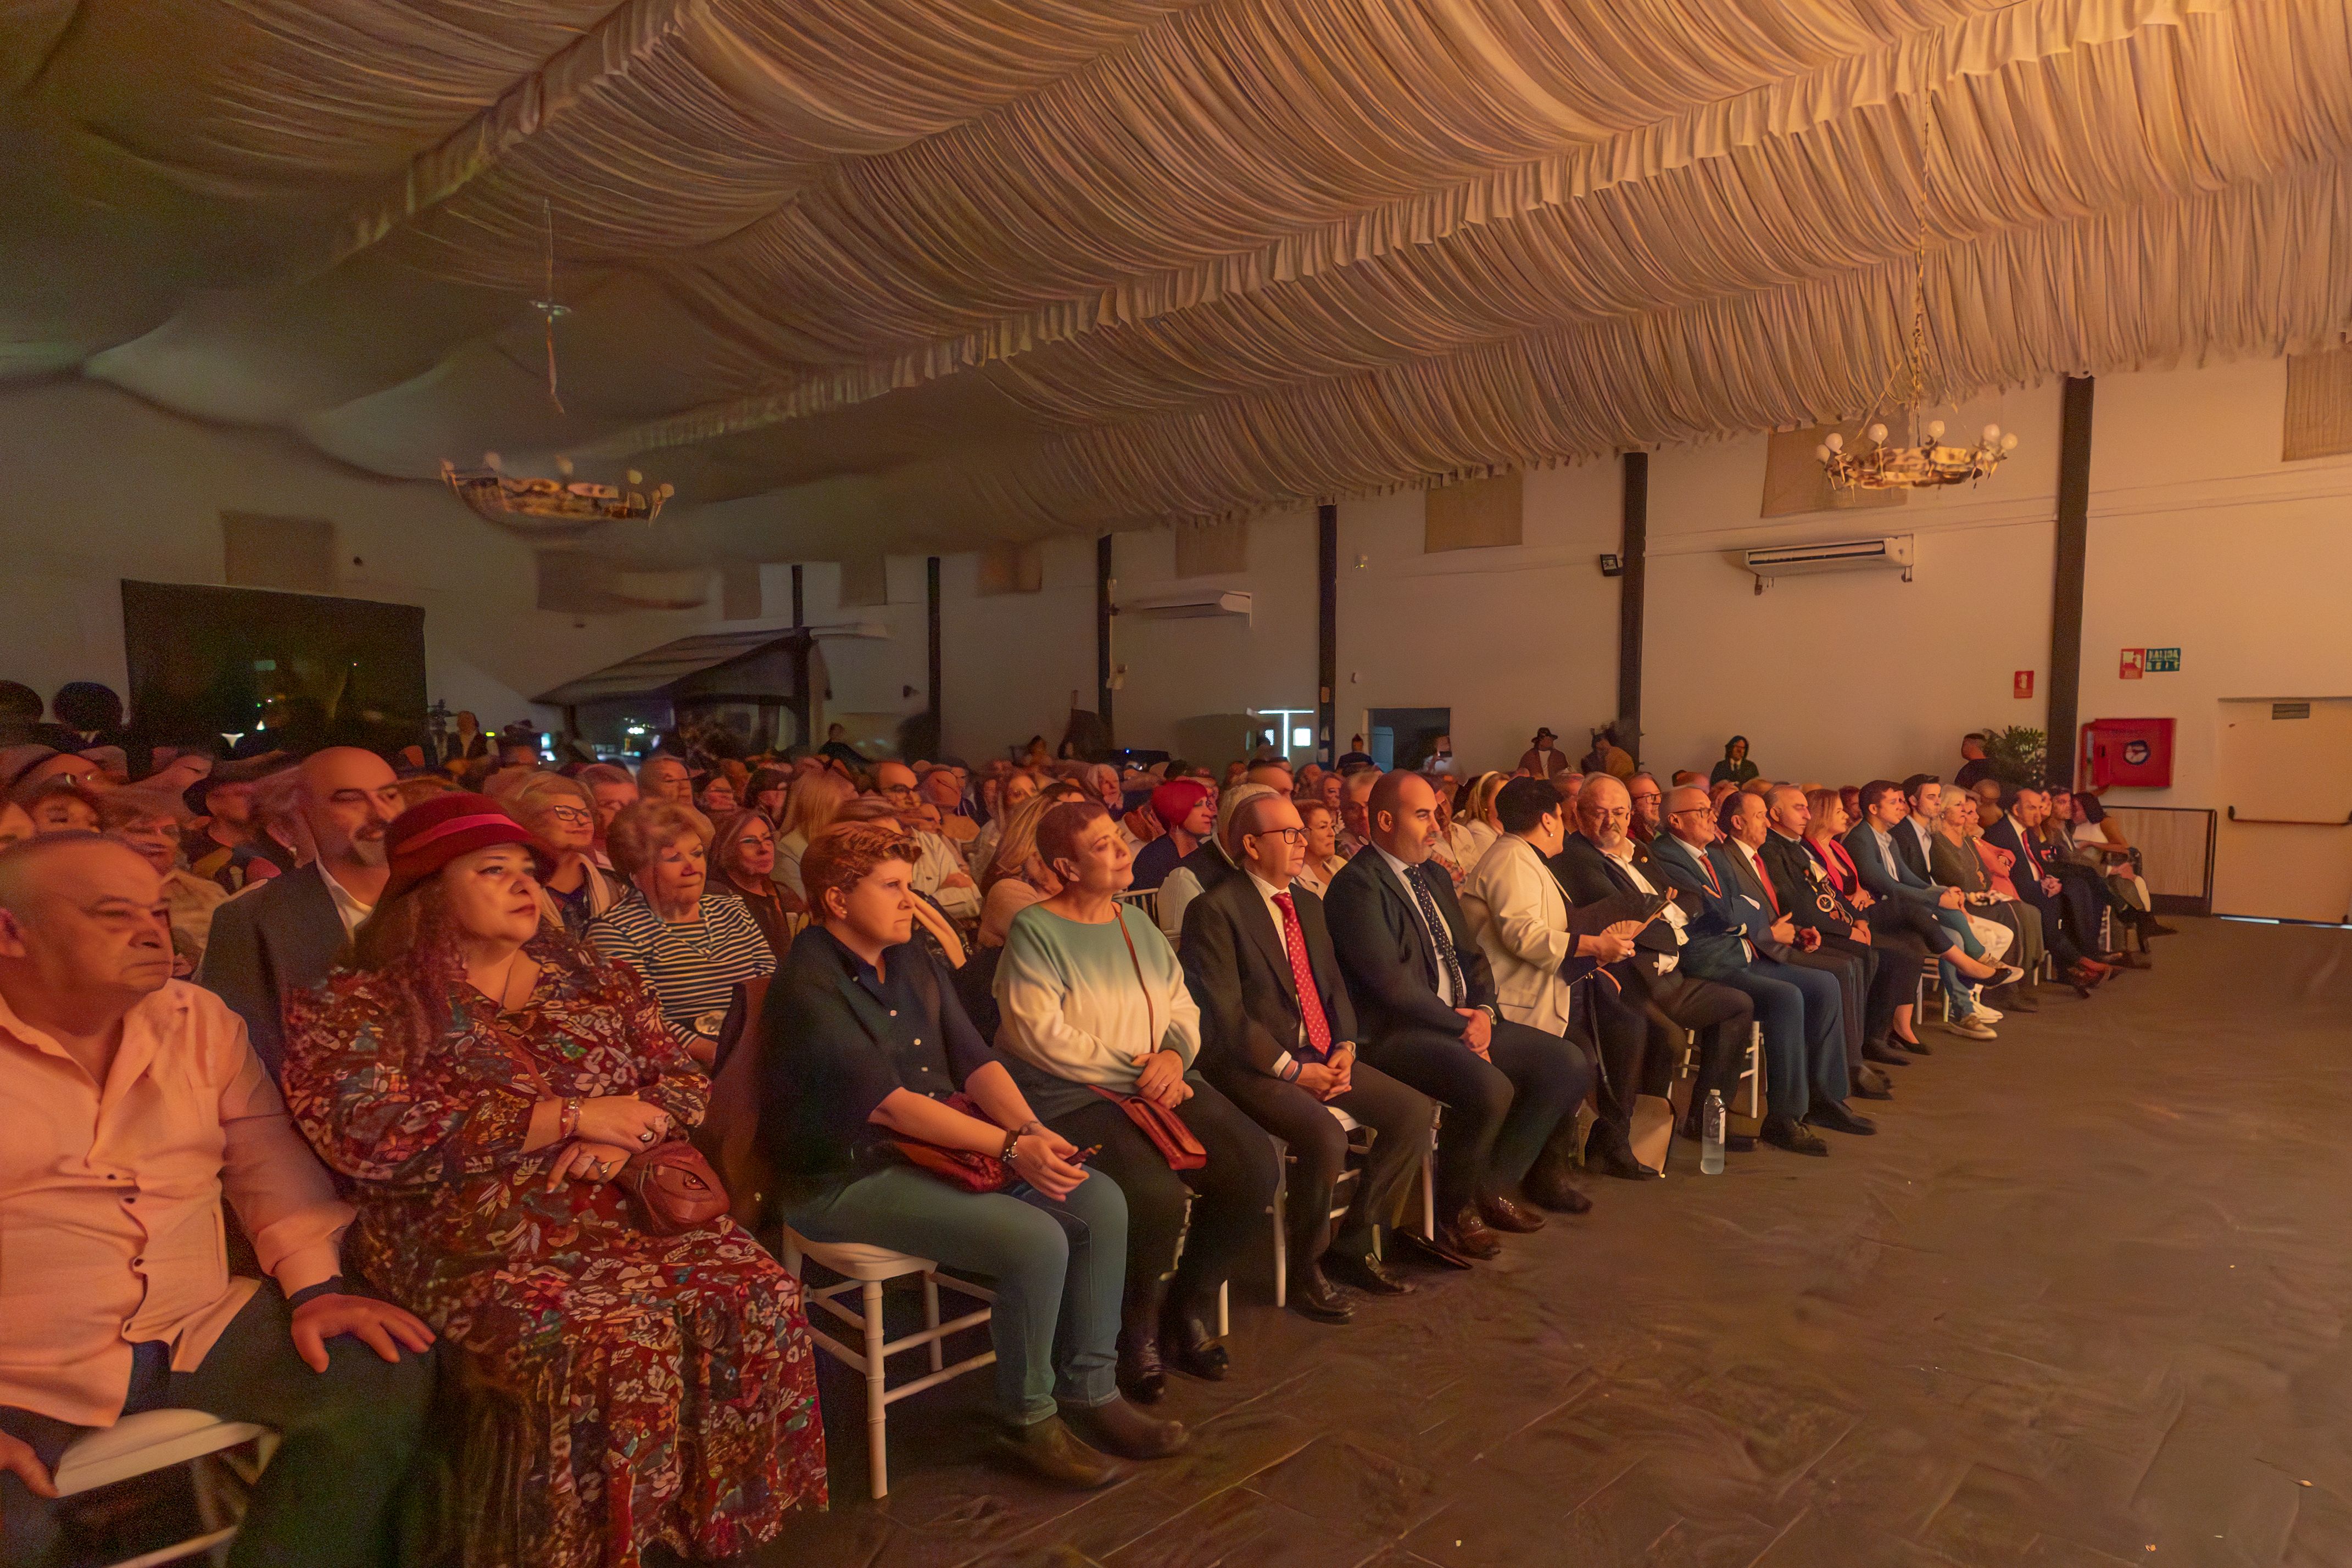 Socios de las 46 peñas flamencas que componen la federación provincial volvían a celebrar una jornada de convivencia en torno al flamenco